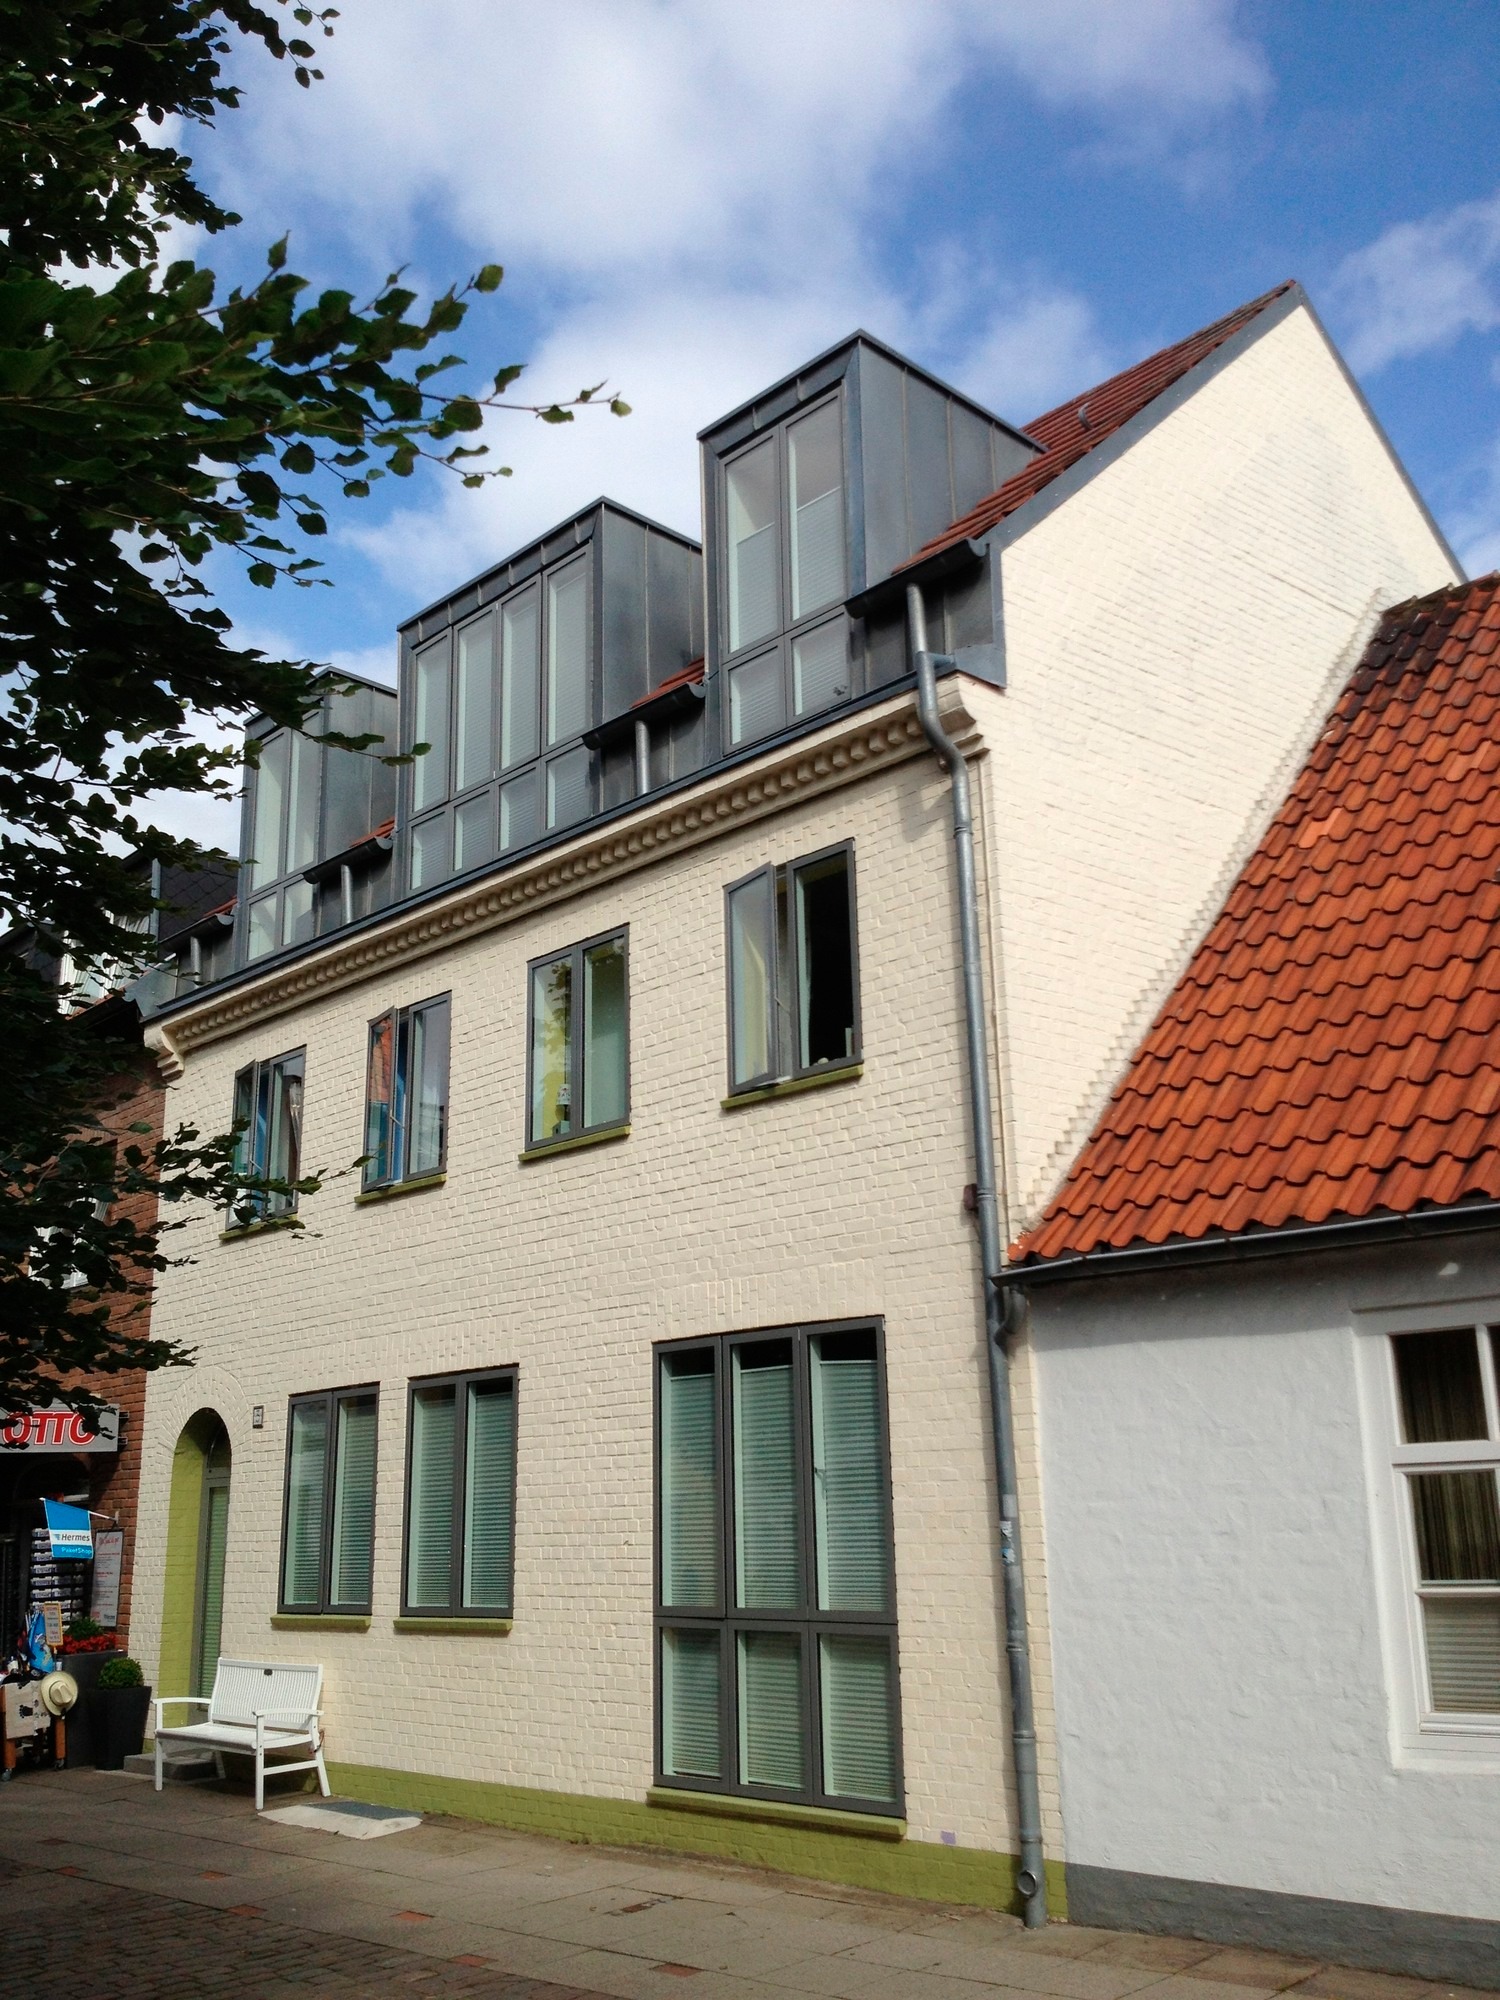 Casa Cinzia (Sara) Ferienwohnung in Schleswig Holstein